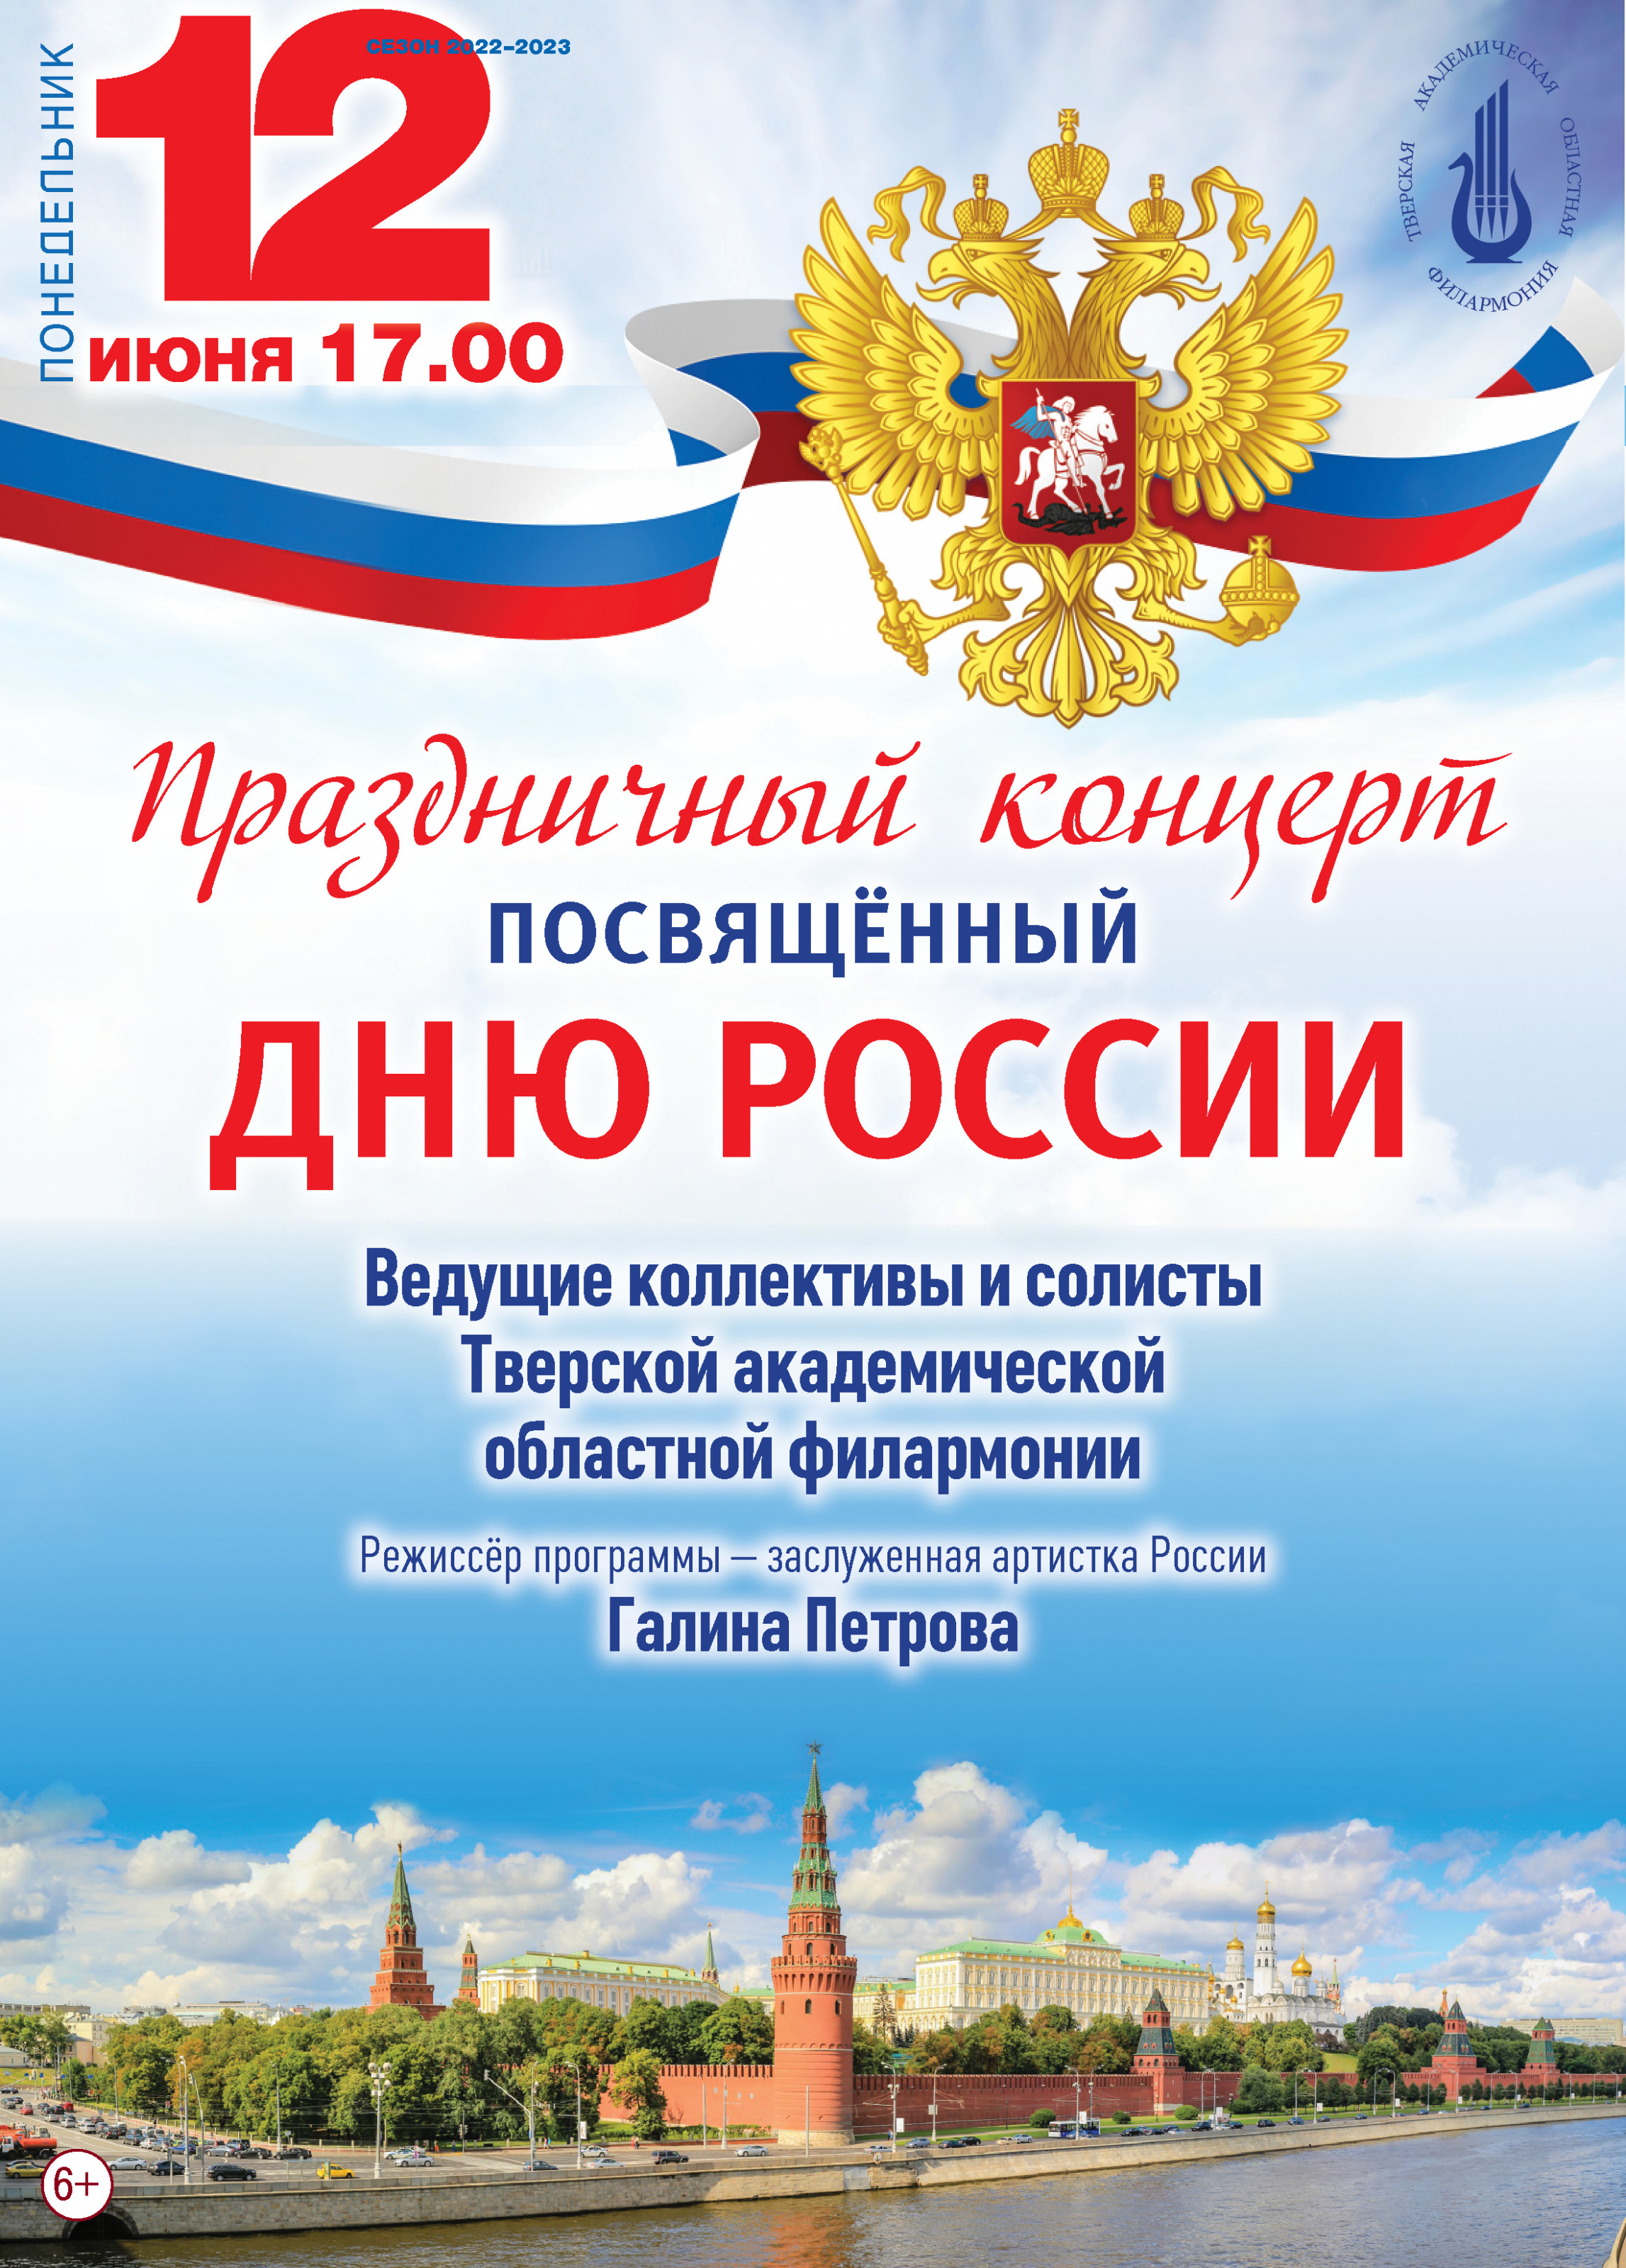 Тверская филармония приглашает на праздничный концерт, посвященный Дню России